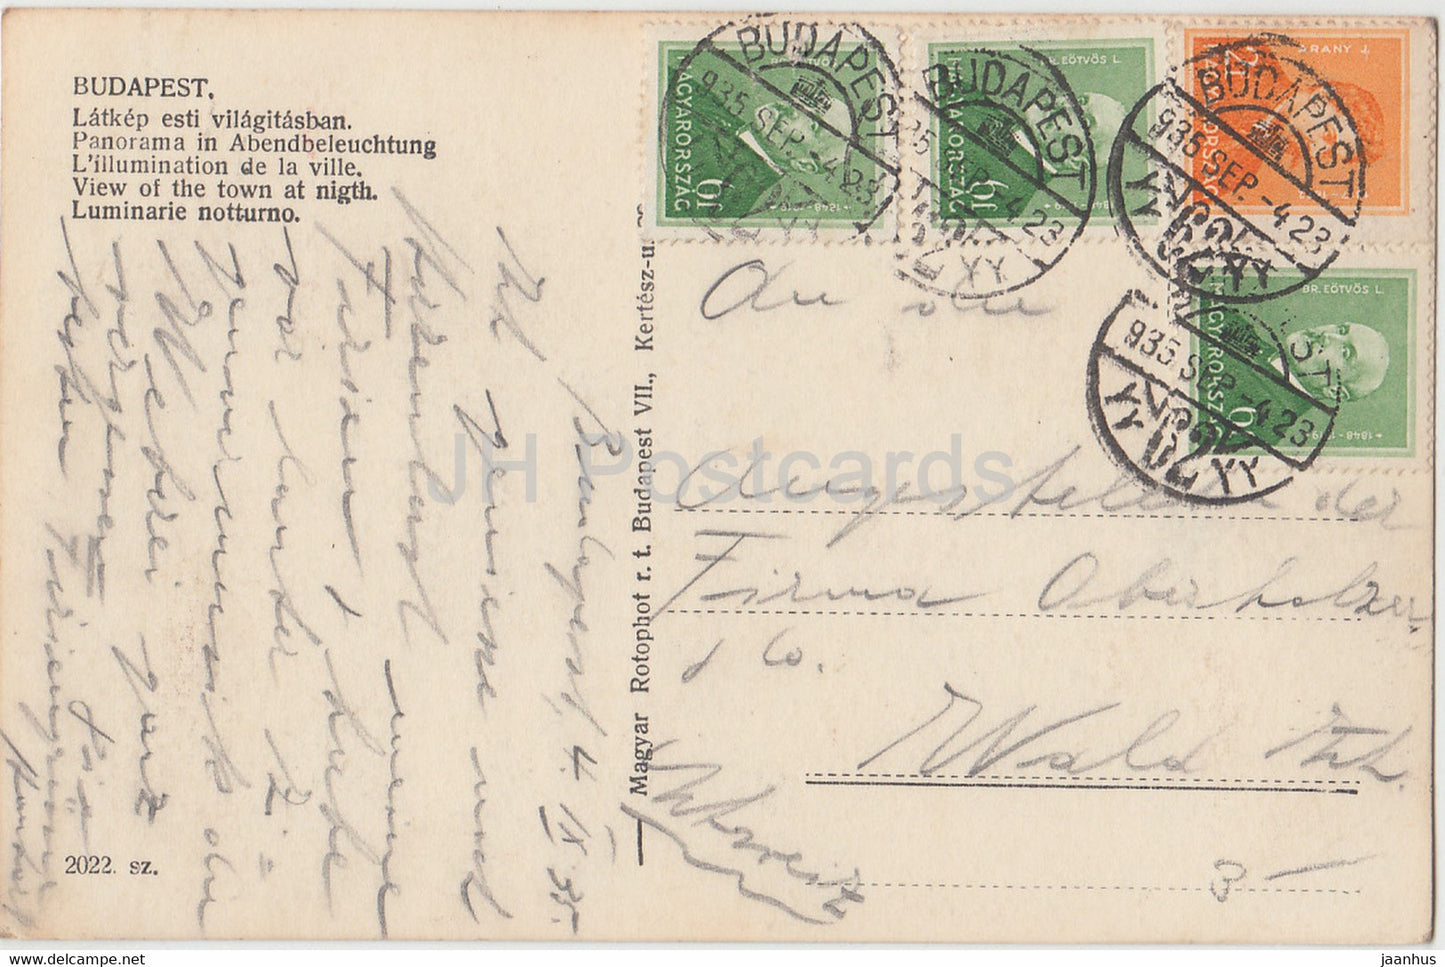 Budapest - Latkep esti vilagitasban - Vue de la ville la nuit - carte postale ancienne - 1935 - Hongrie - utilisé